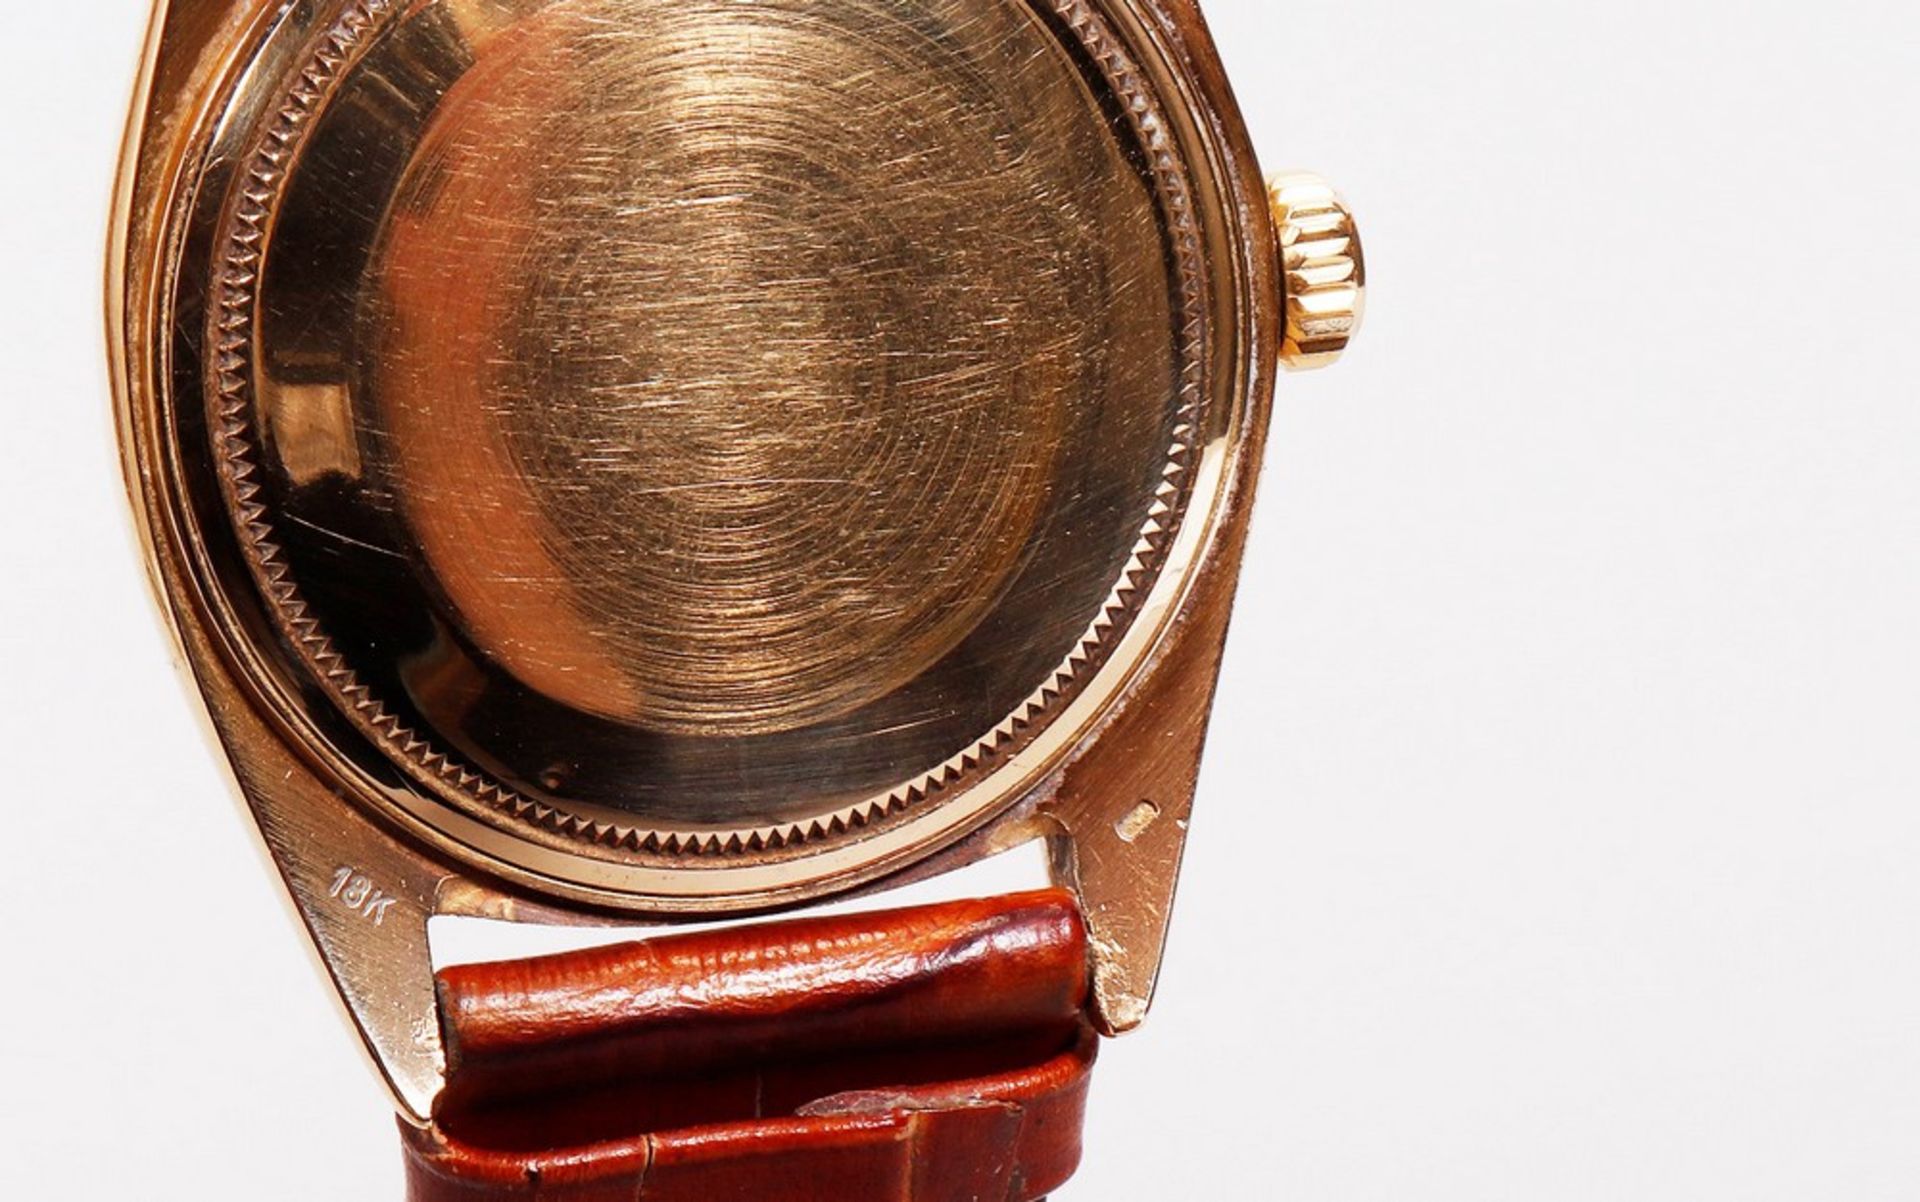 Rolex Day Date, 750er Gold, Referenz 1807, Pie Pan Dial  - Bild 4 aus 5